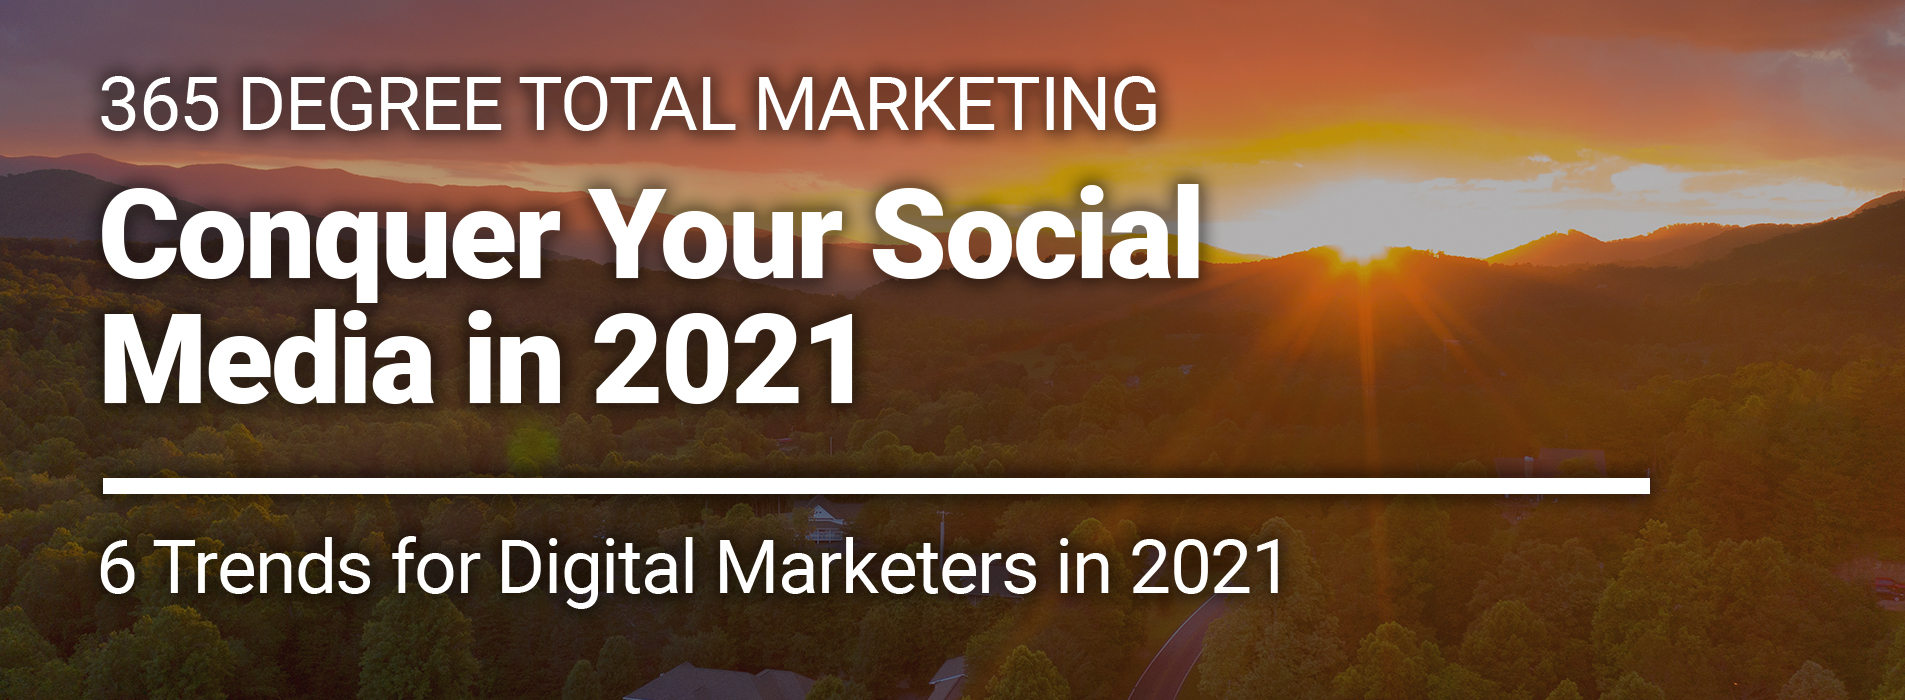 Tips for Social Media in 2021